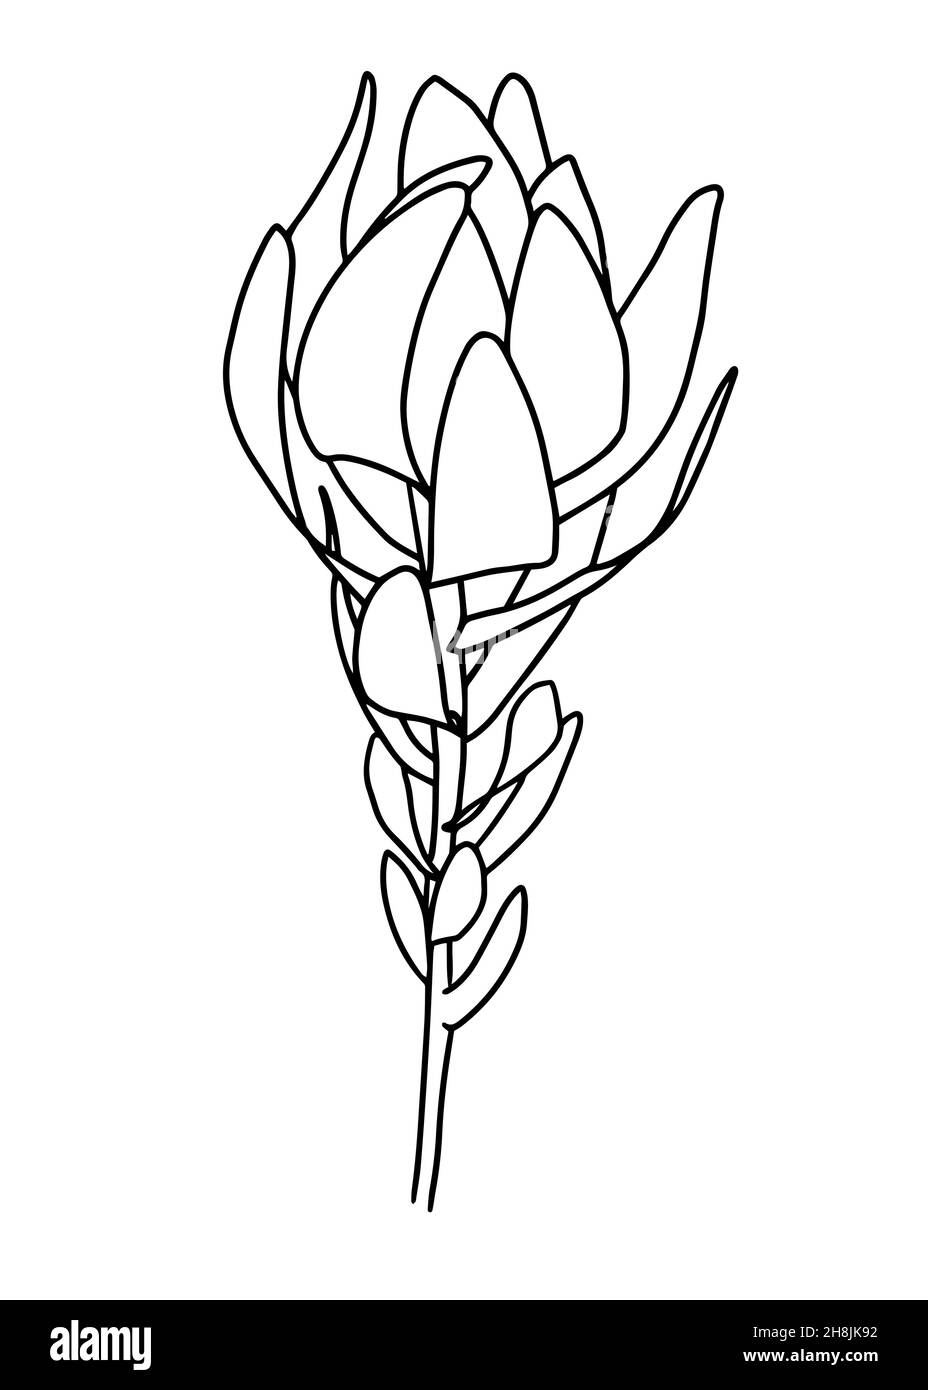 Tracé de contour d'une branche avec des lames.Clipart vecteur isolé.Motif botanique monochrome dessiné à la main minimal. Illustration de Vecteur